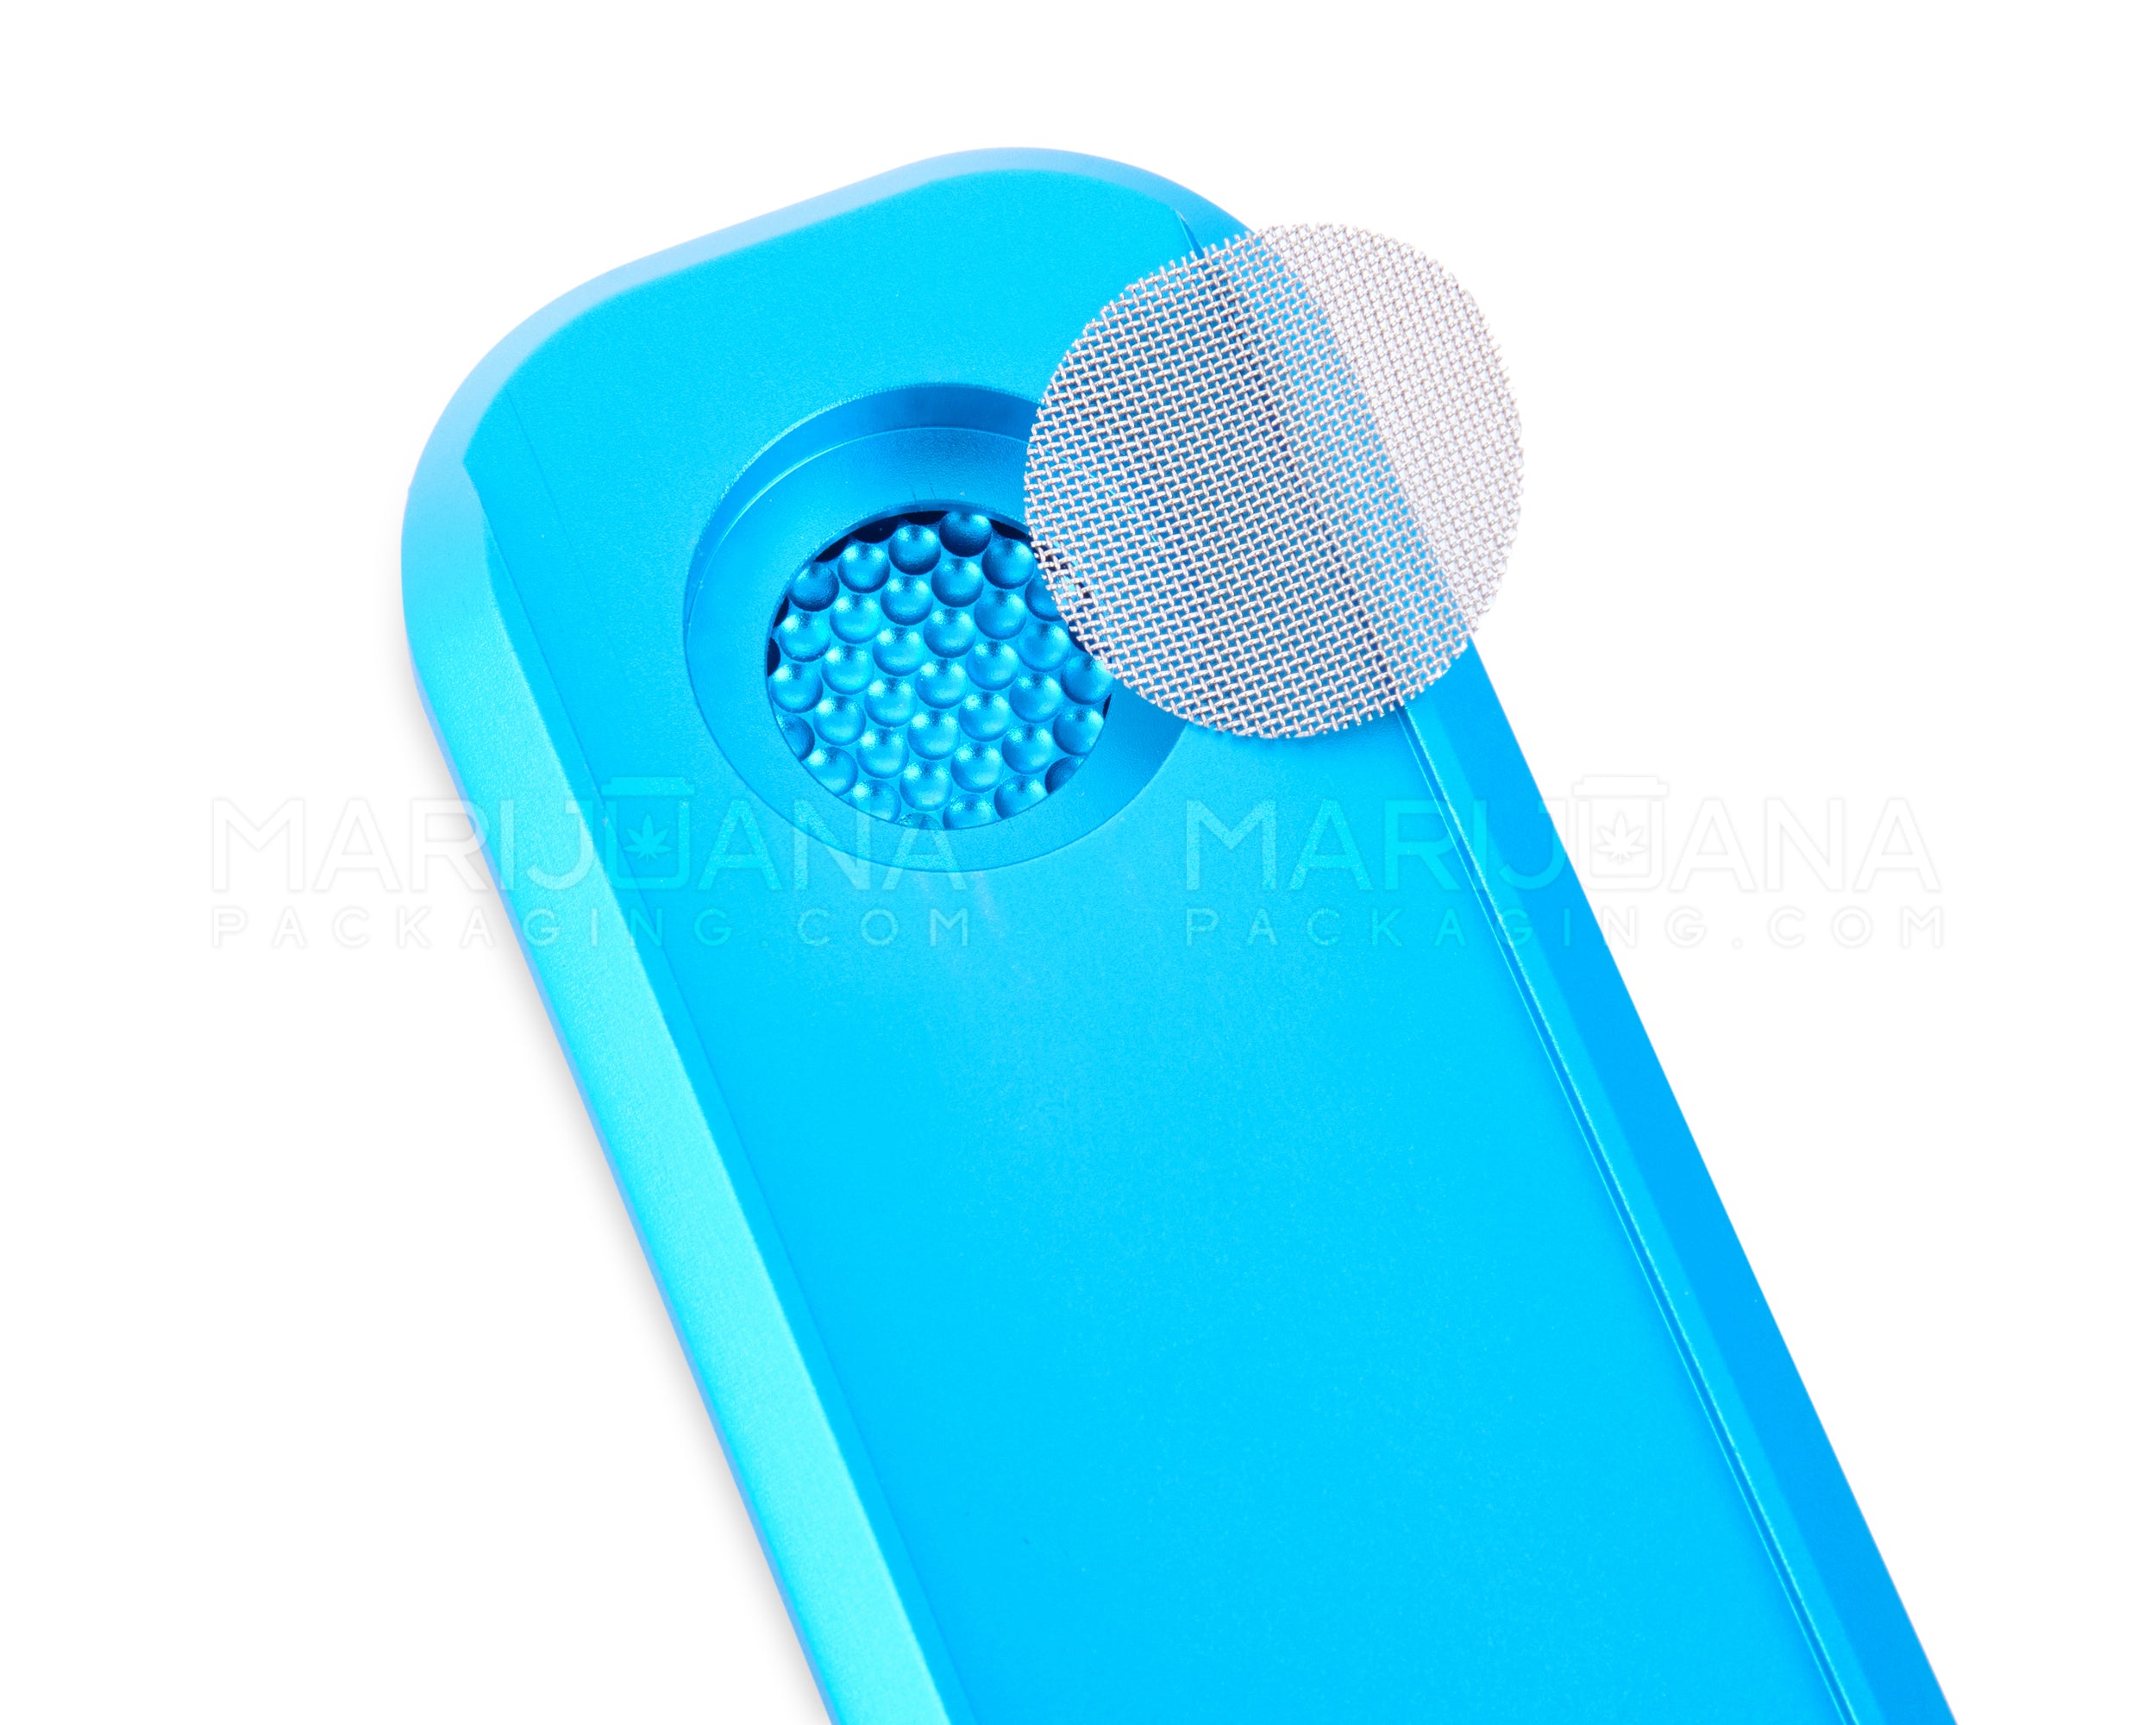 GENIUS PIPE | Mini Color Magnetic Slider Pipe | 5in Long - Metal - Blue - 6